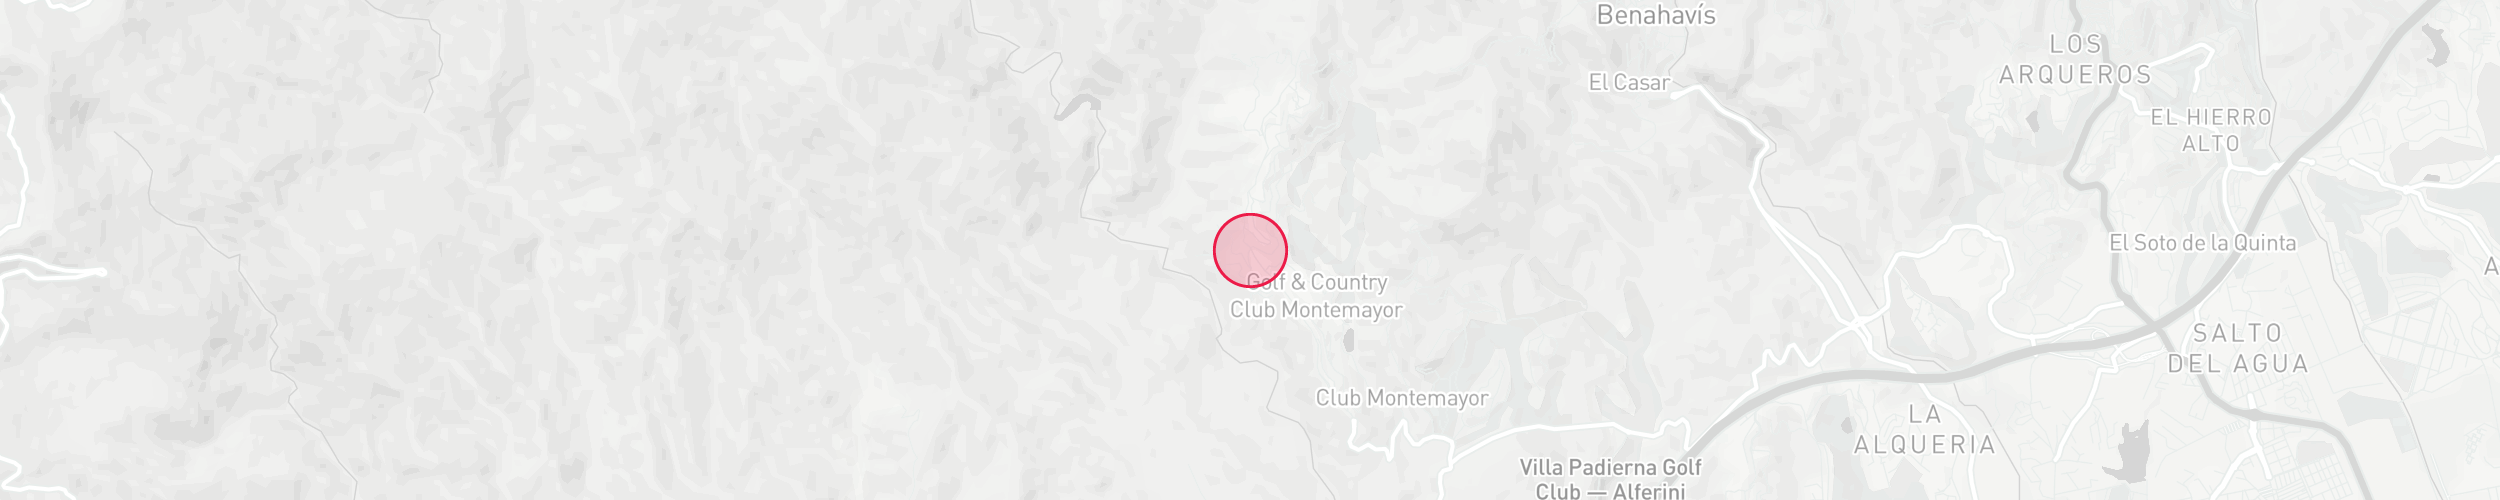 Mapa de localización de la propiedad - Monte Mayor